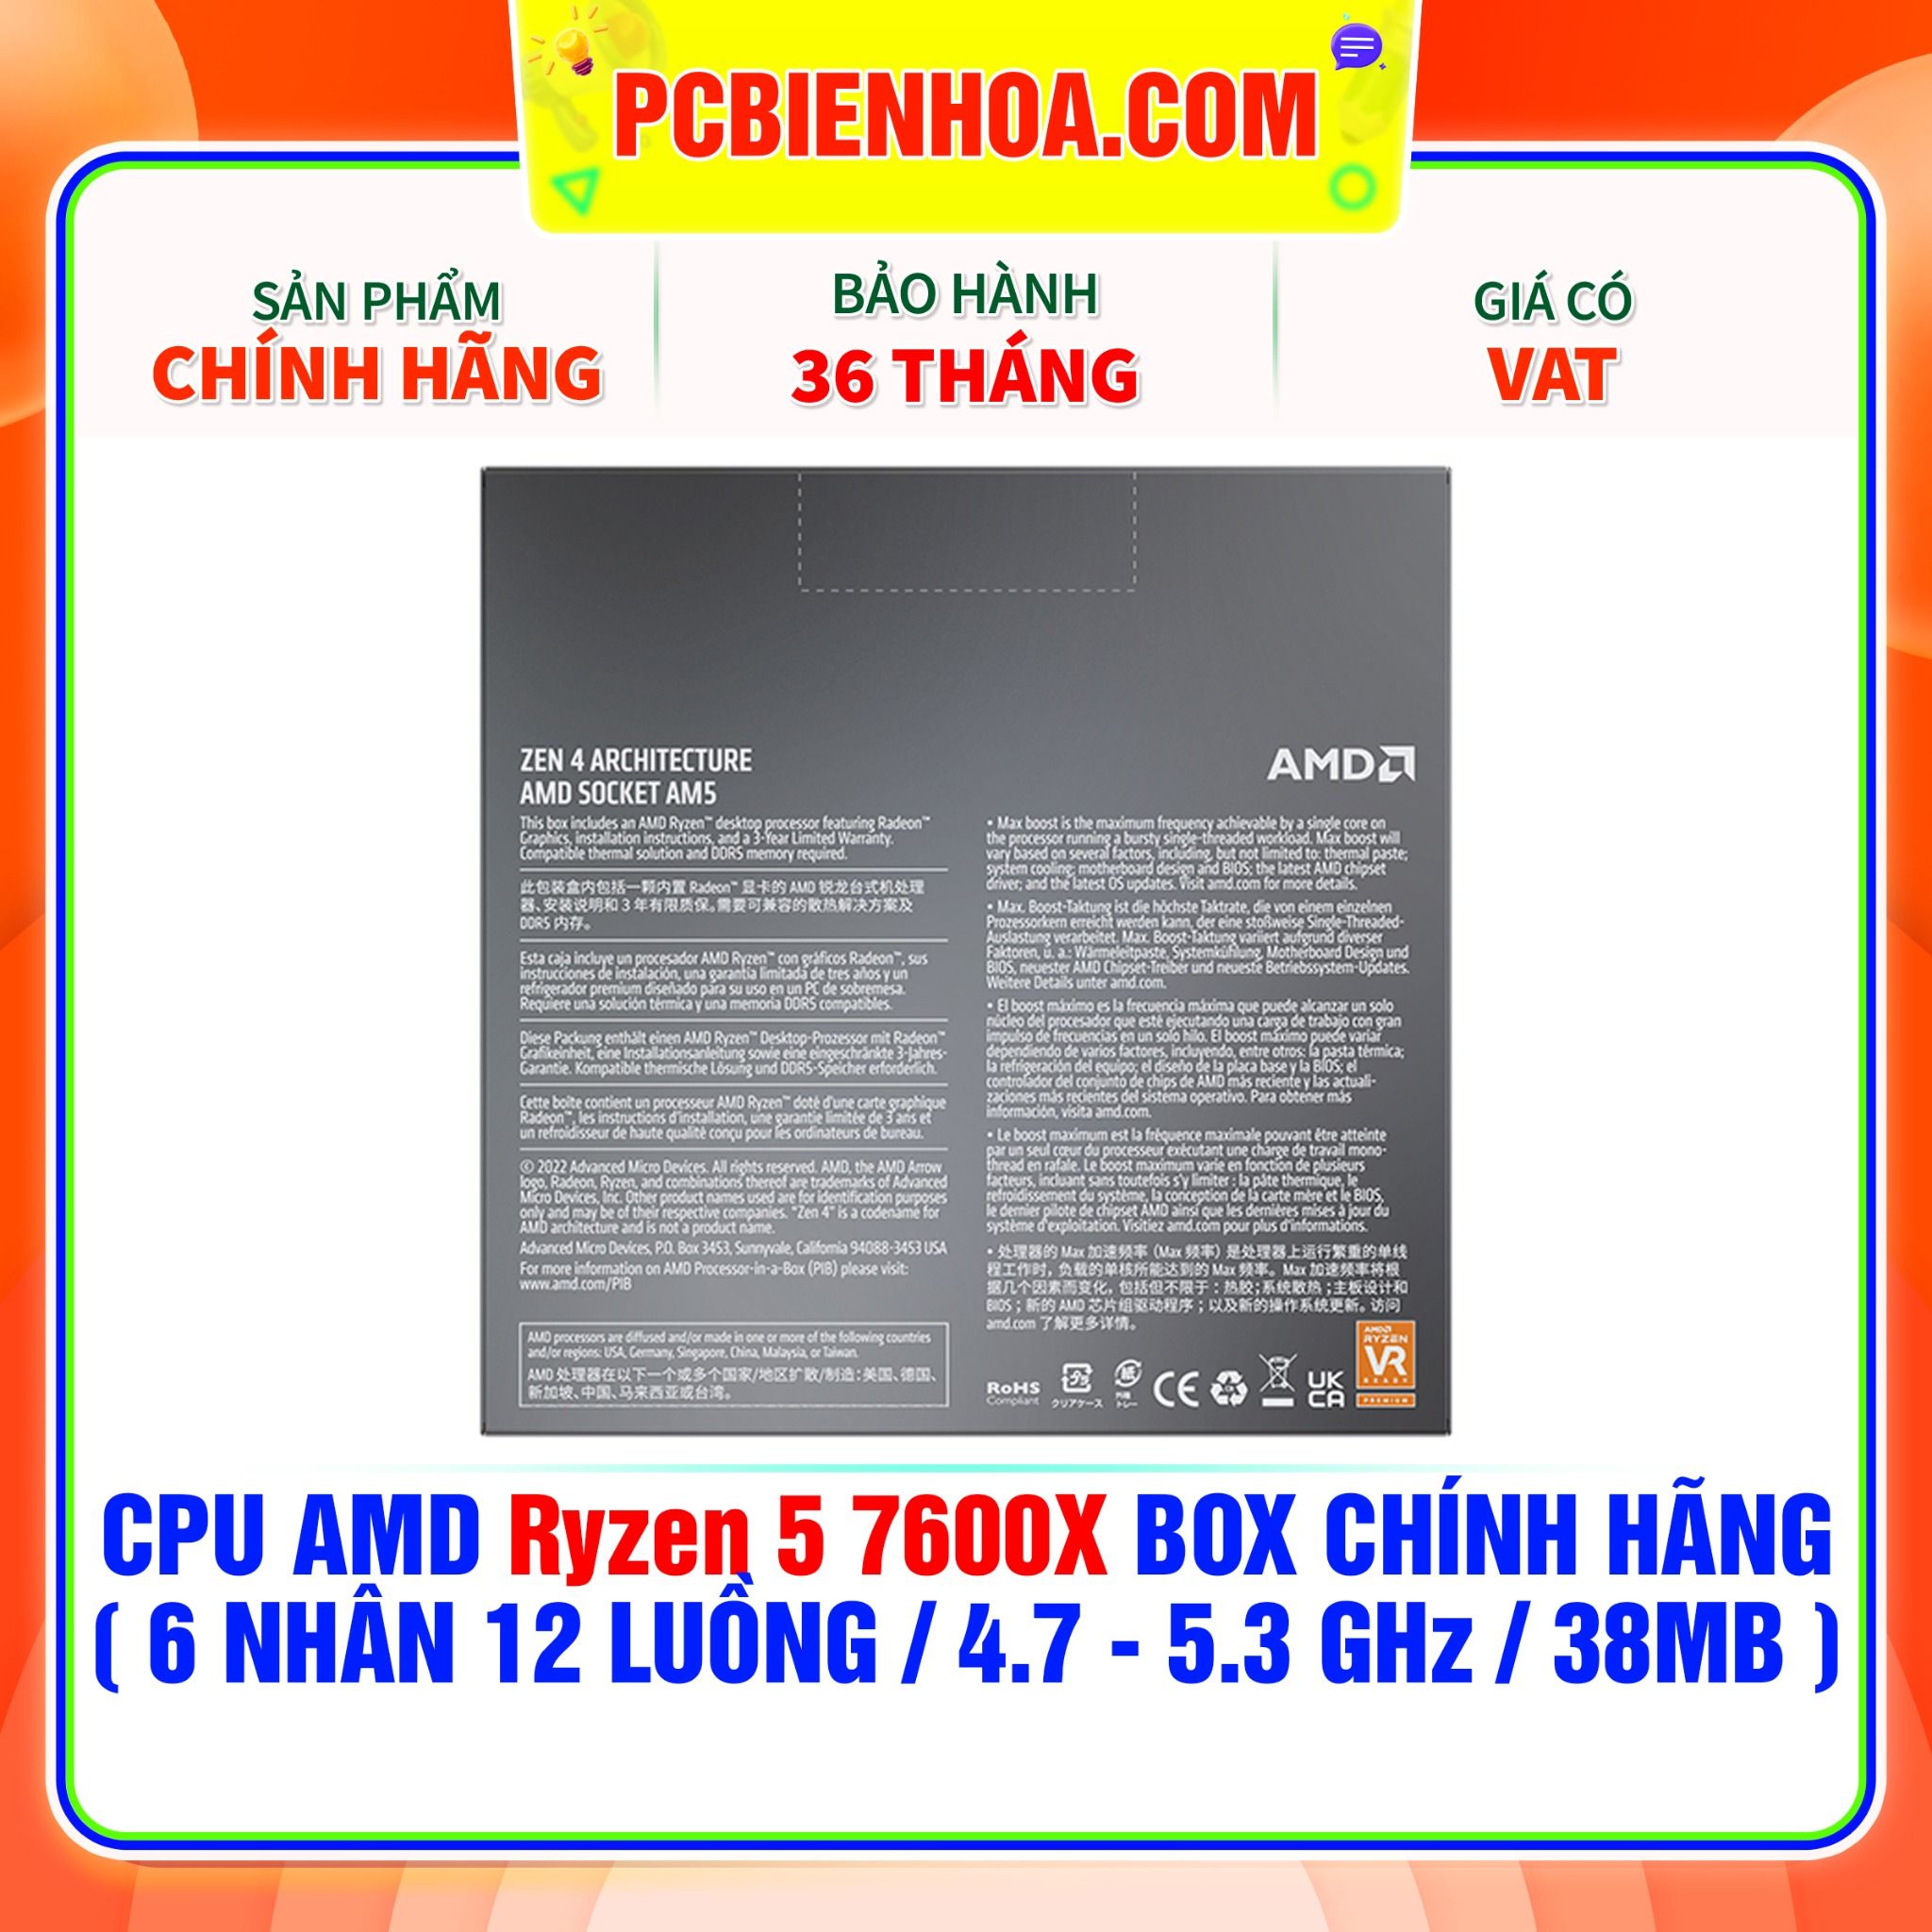  CPU AMD Ryzen 5 7600X BOX CHÍNH HÃNG ( 6 NHÂN 12 LUỒNG / 4.7 - 5.3 GHz / 38MB ) 